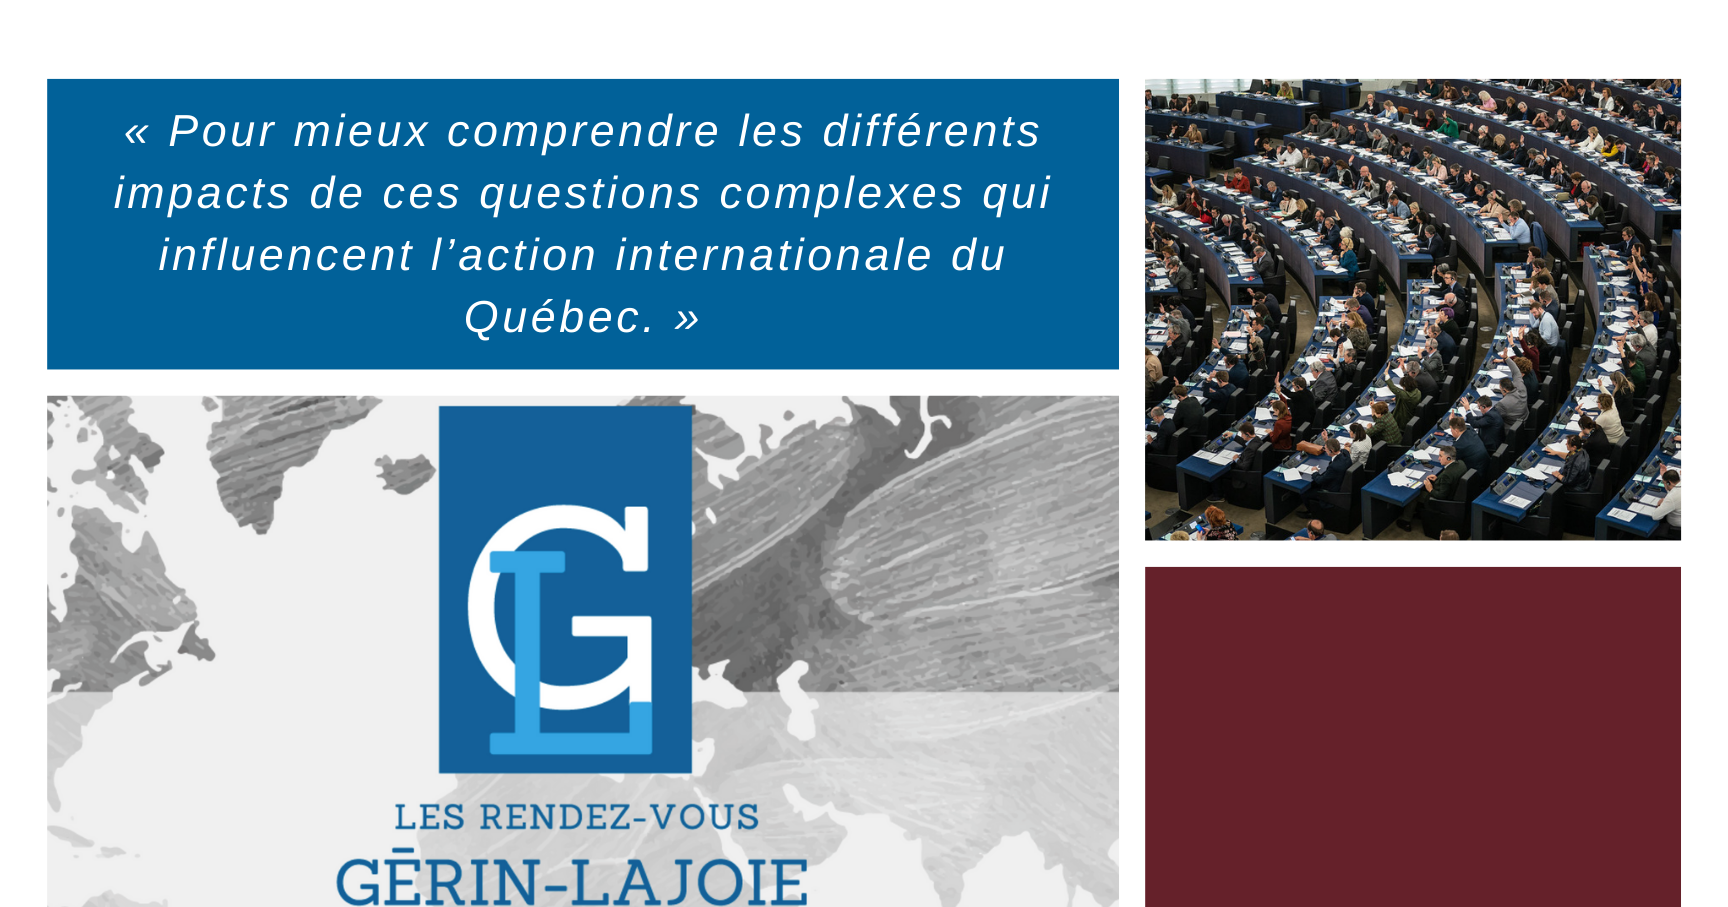 Le Québec au cœur des nouvelles régulations mondiales : chaînes de valeurs, taxation des multinationales et accords commerciaux régionaux 